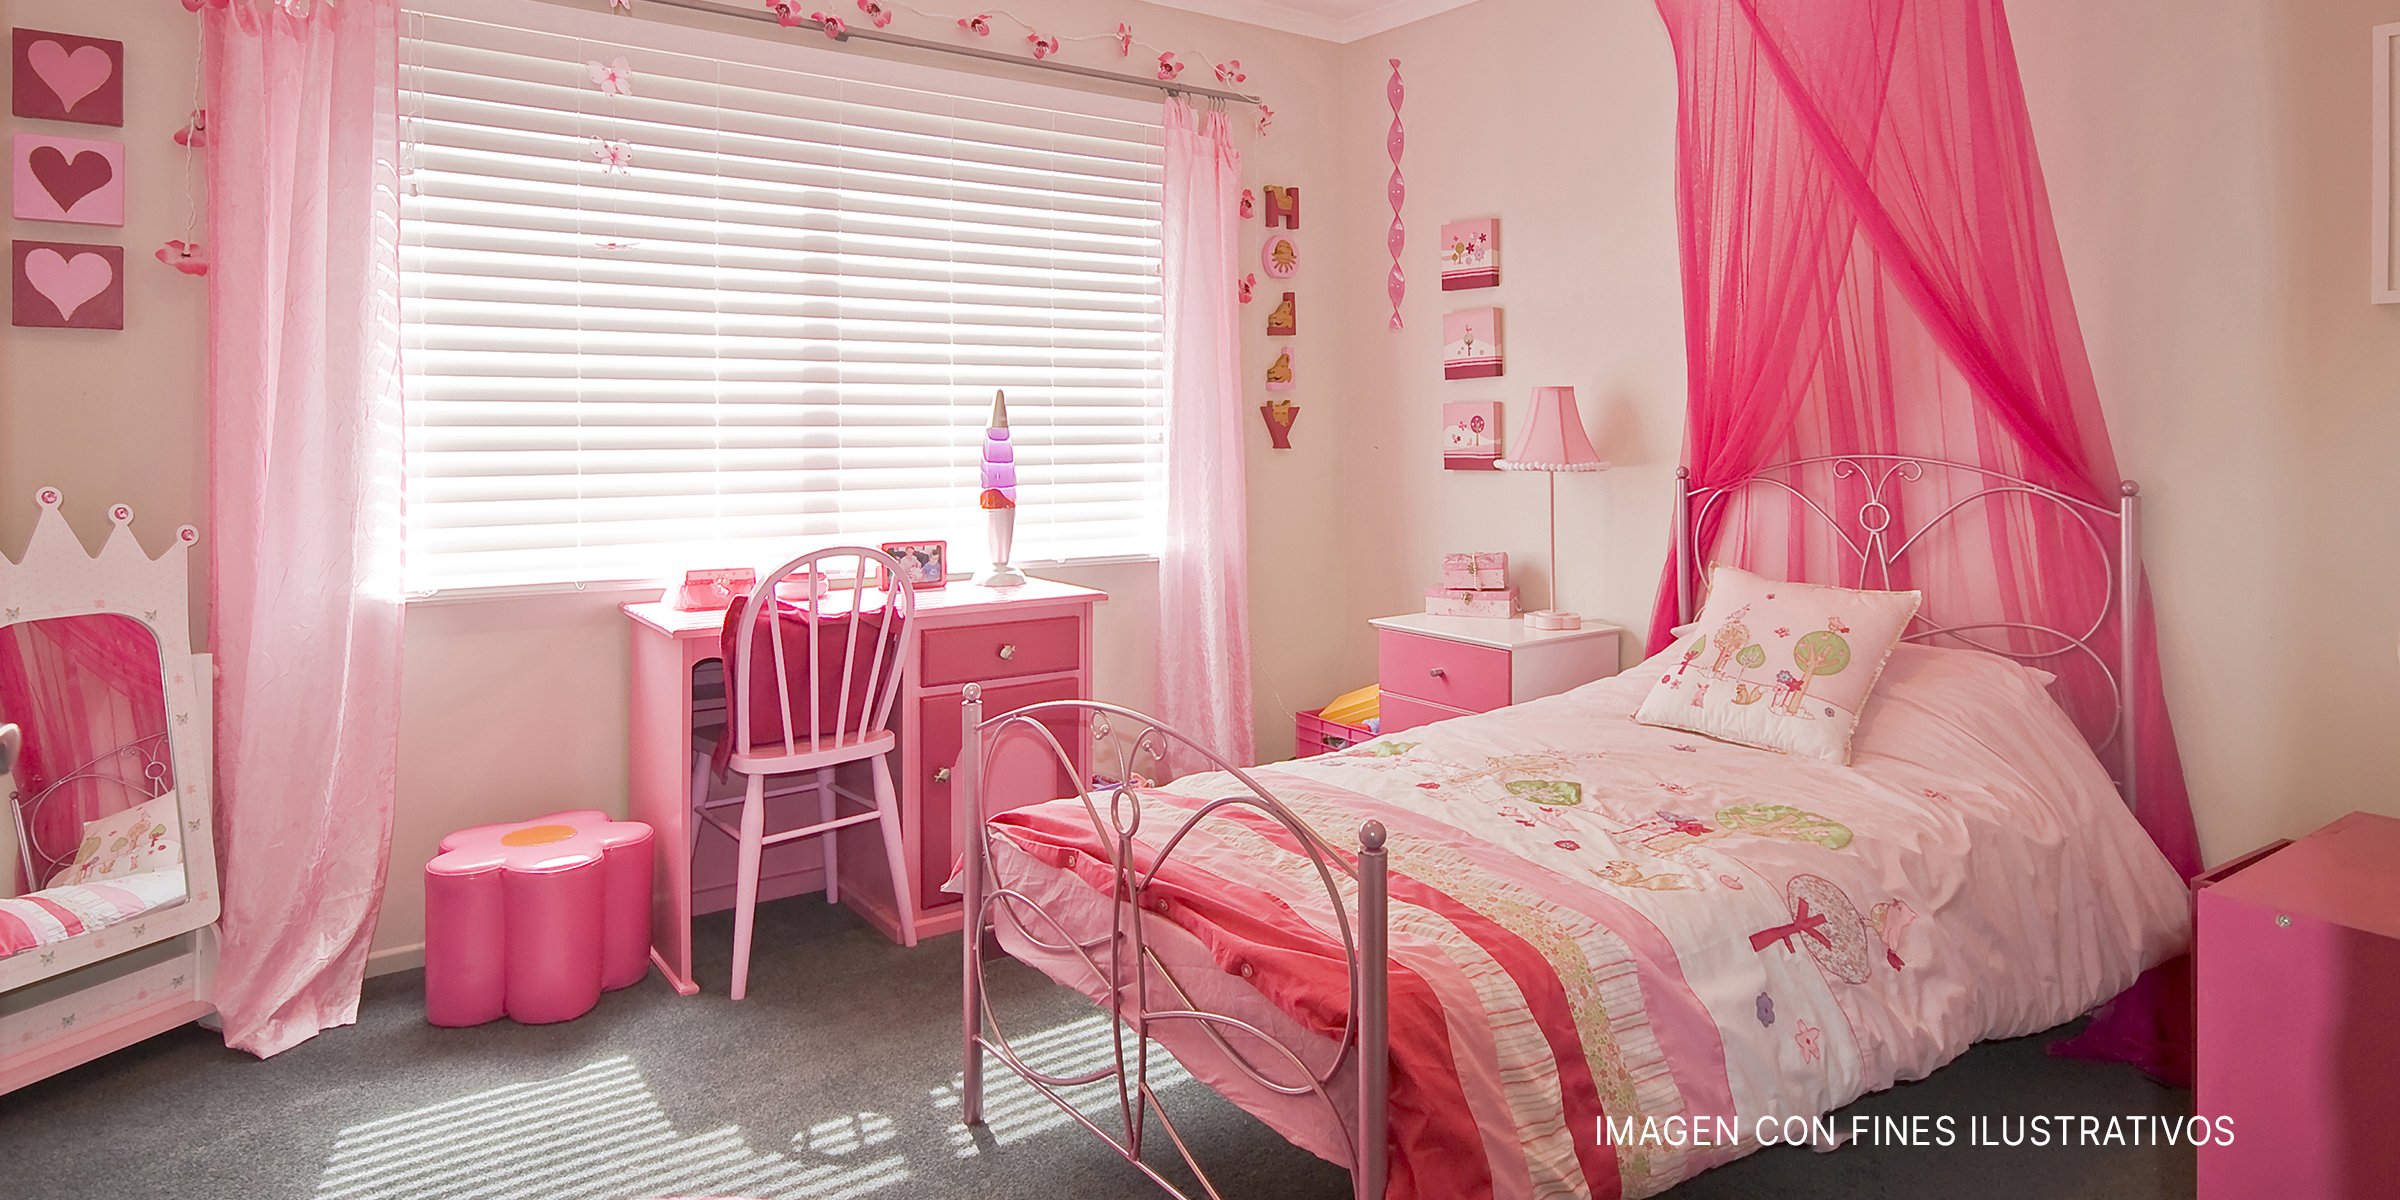 La habitación de una niña | Foto: Shutterstock 